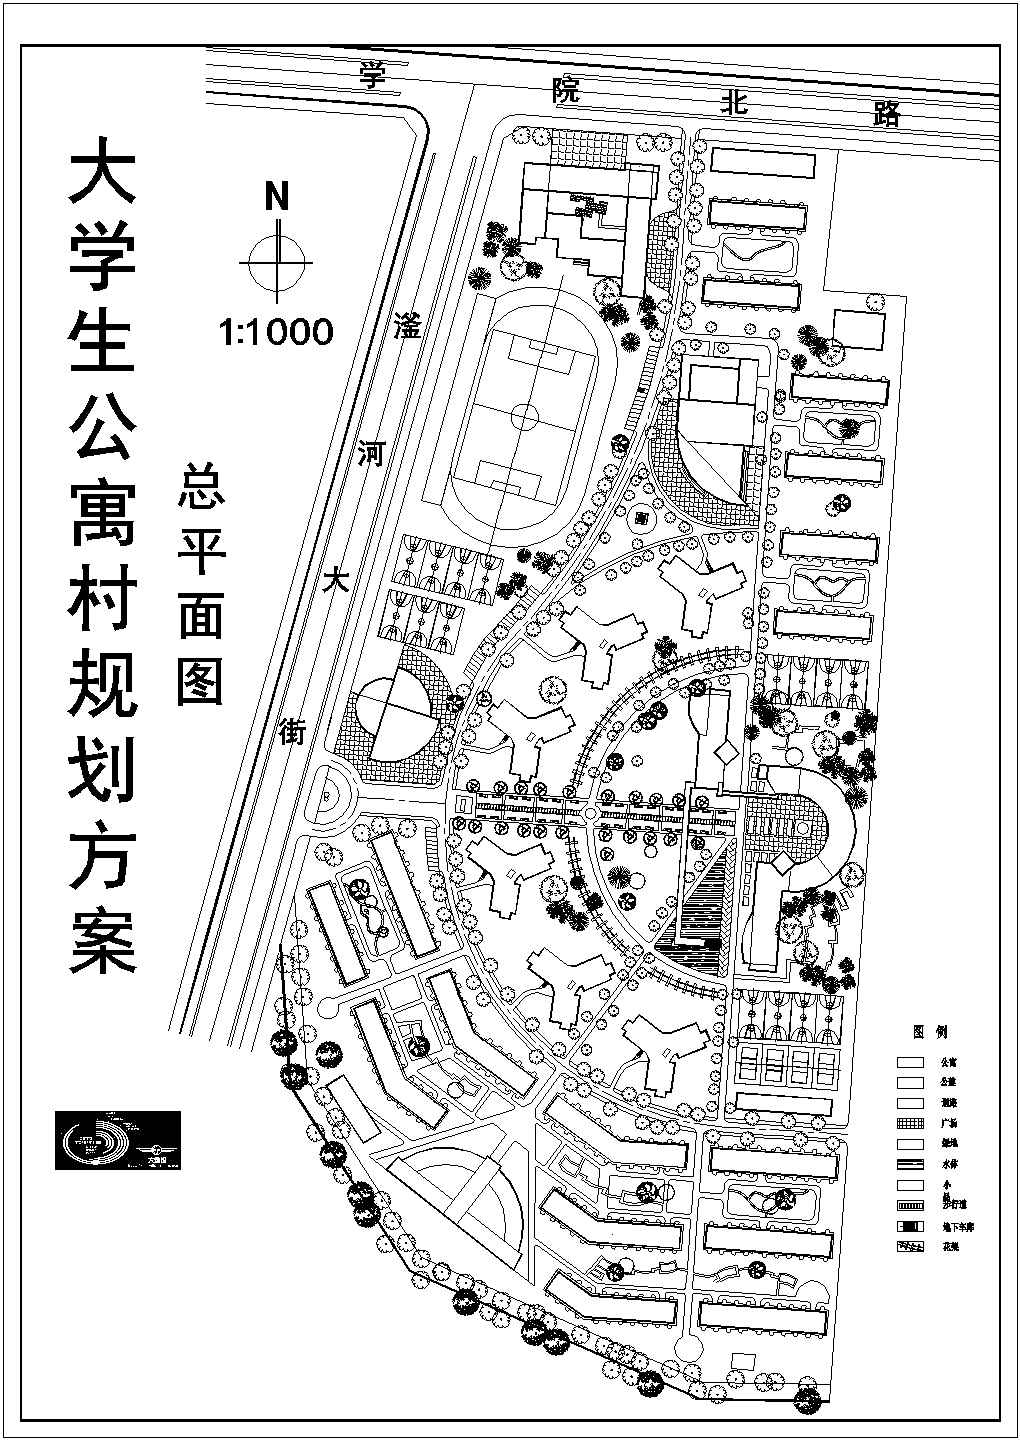 某大学城公寓村规划方案设计cad图(含总平面图)